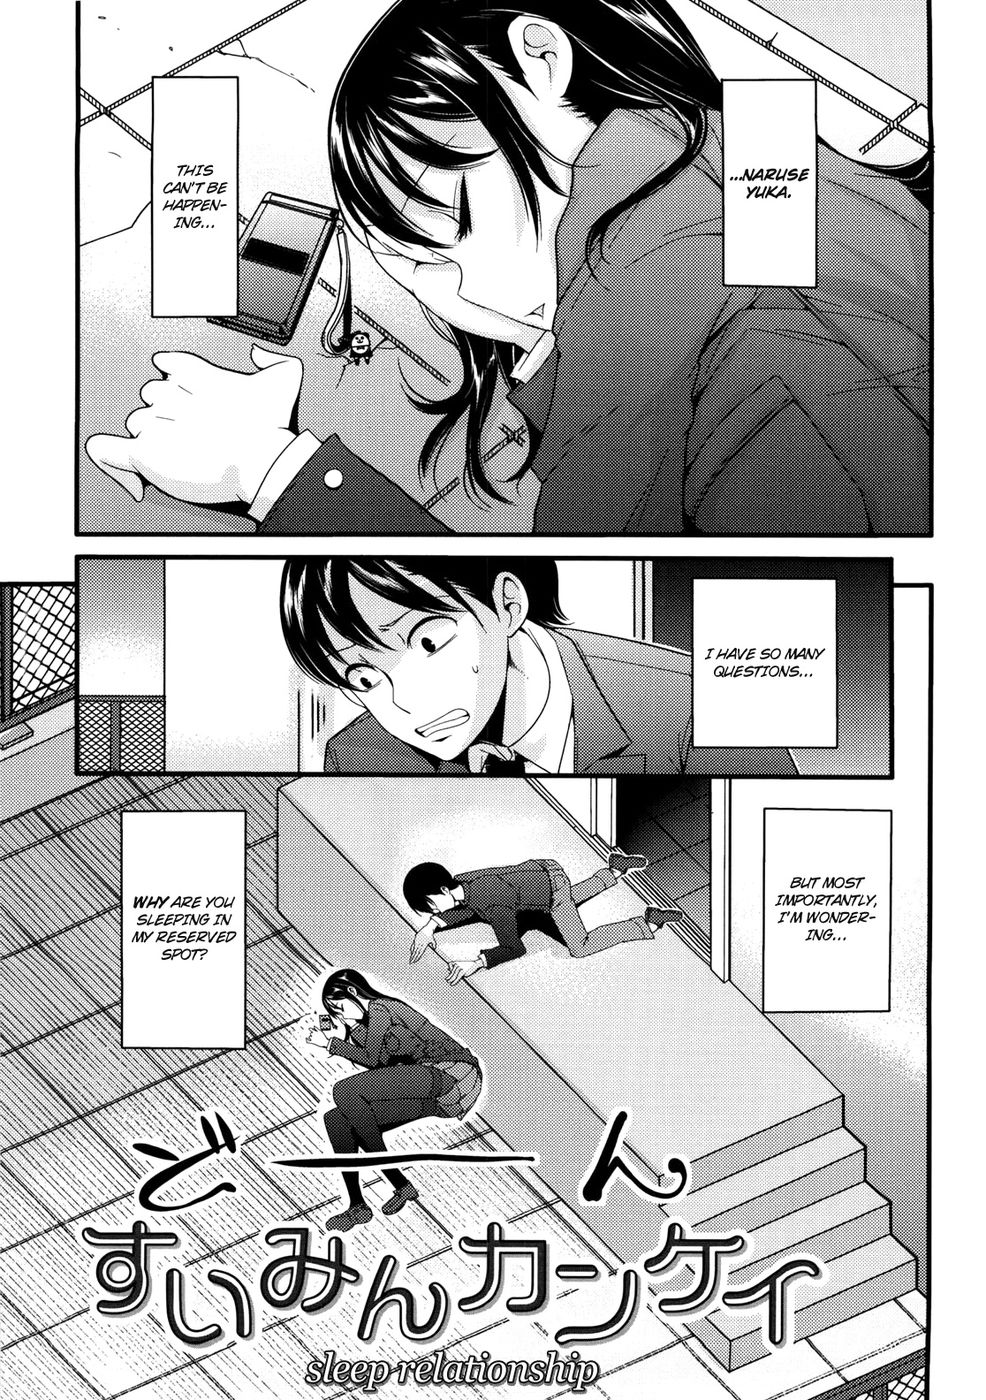 Hentai Manga Comic-Sleep Relationship-Read-1